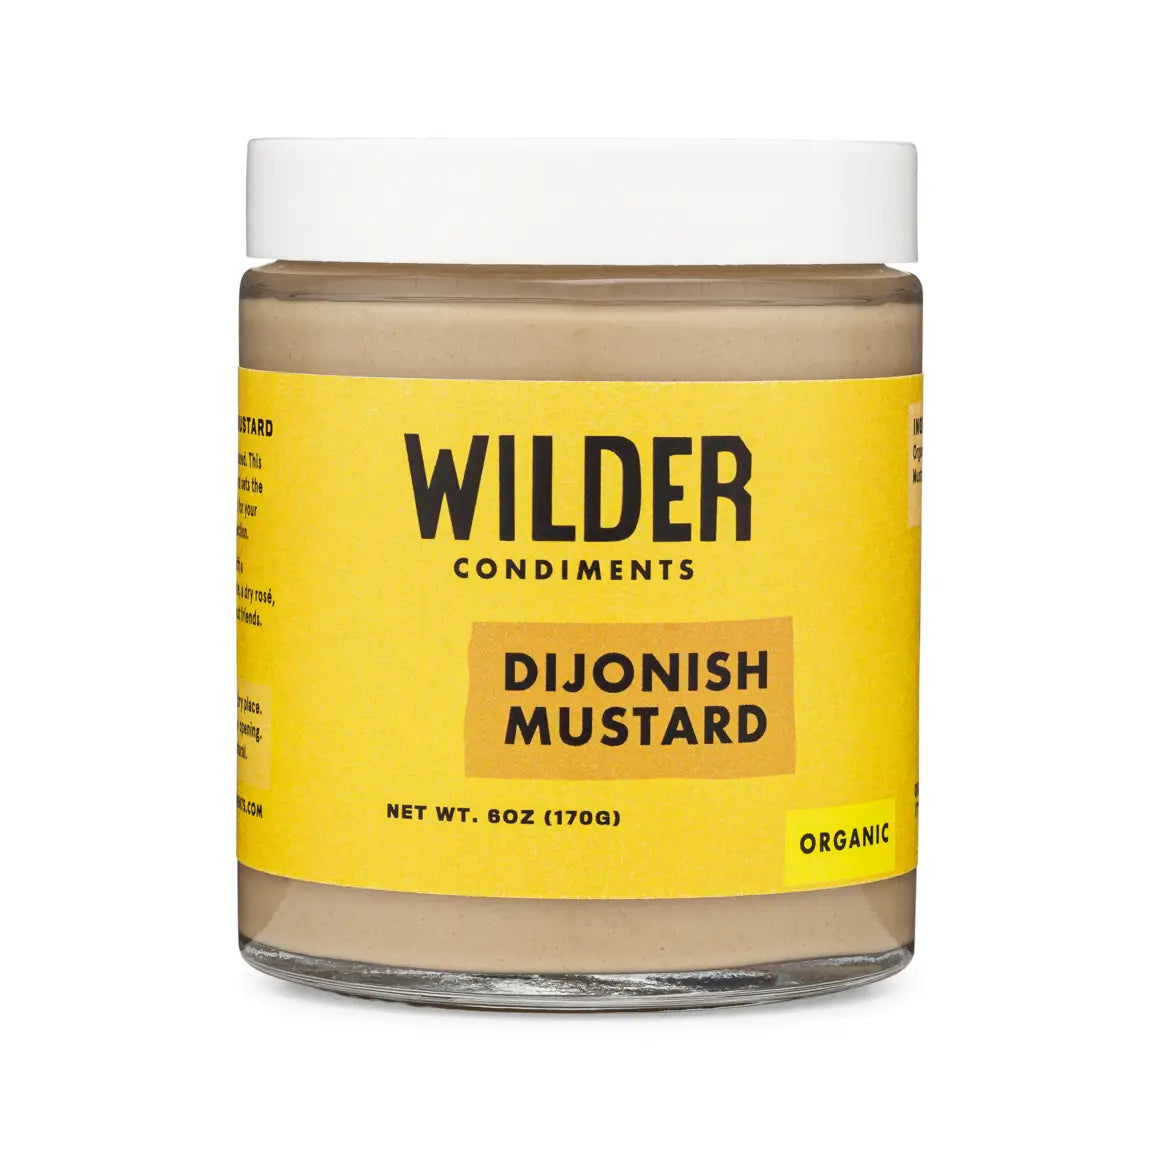 Wilder Condiments Dijonish Mustard